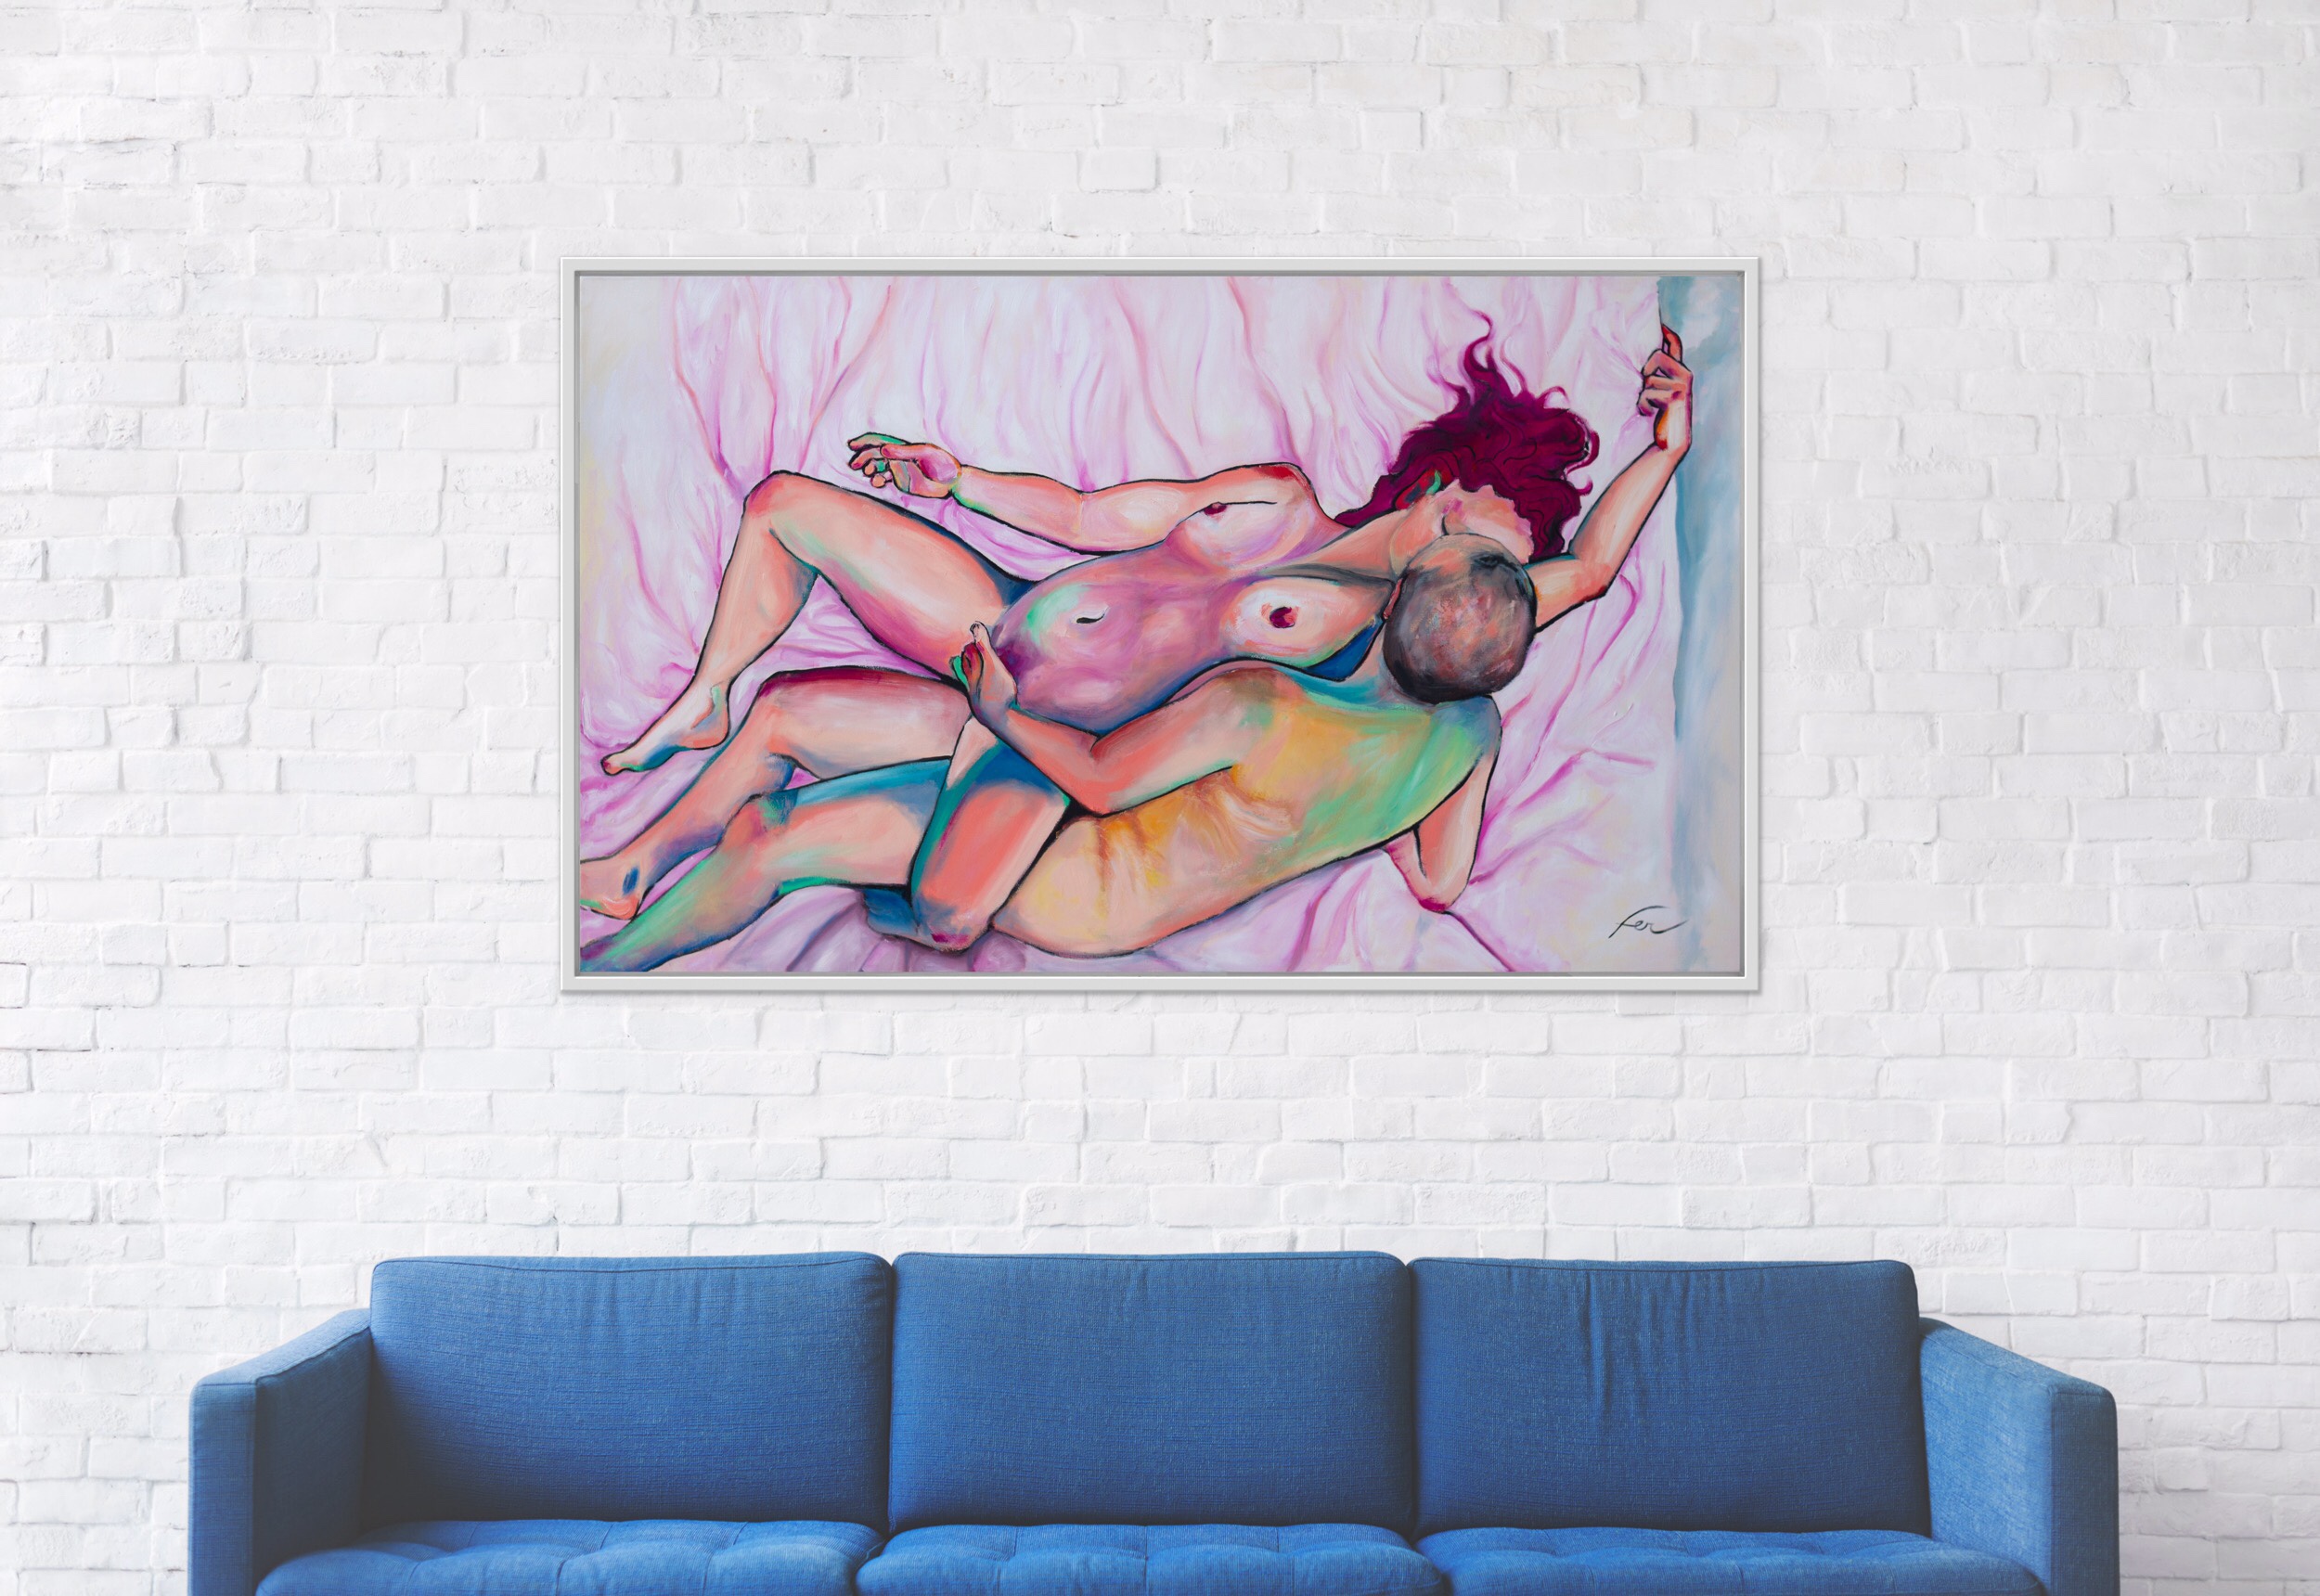 nude couple art on wall